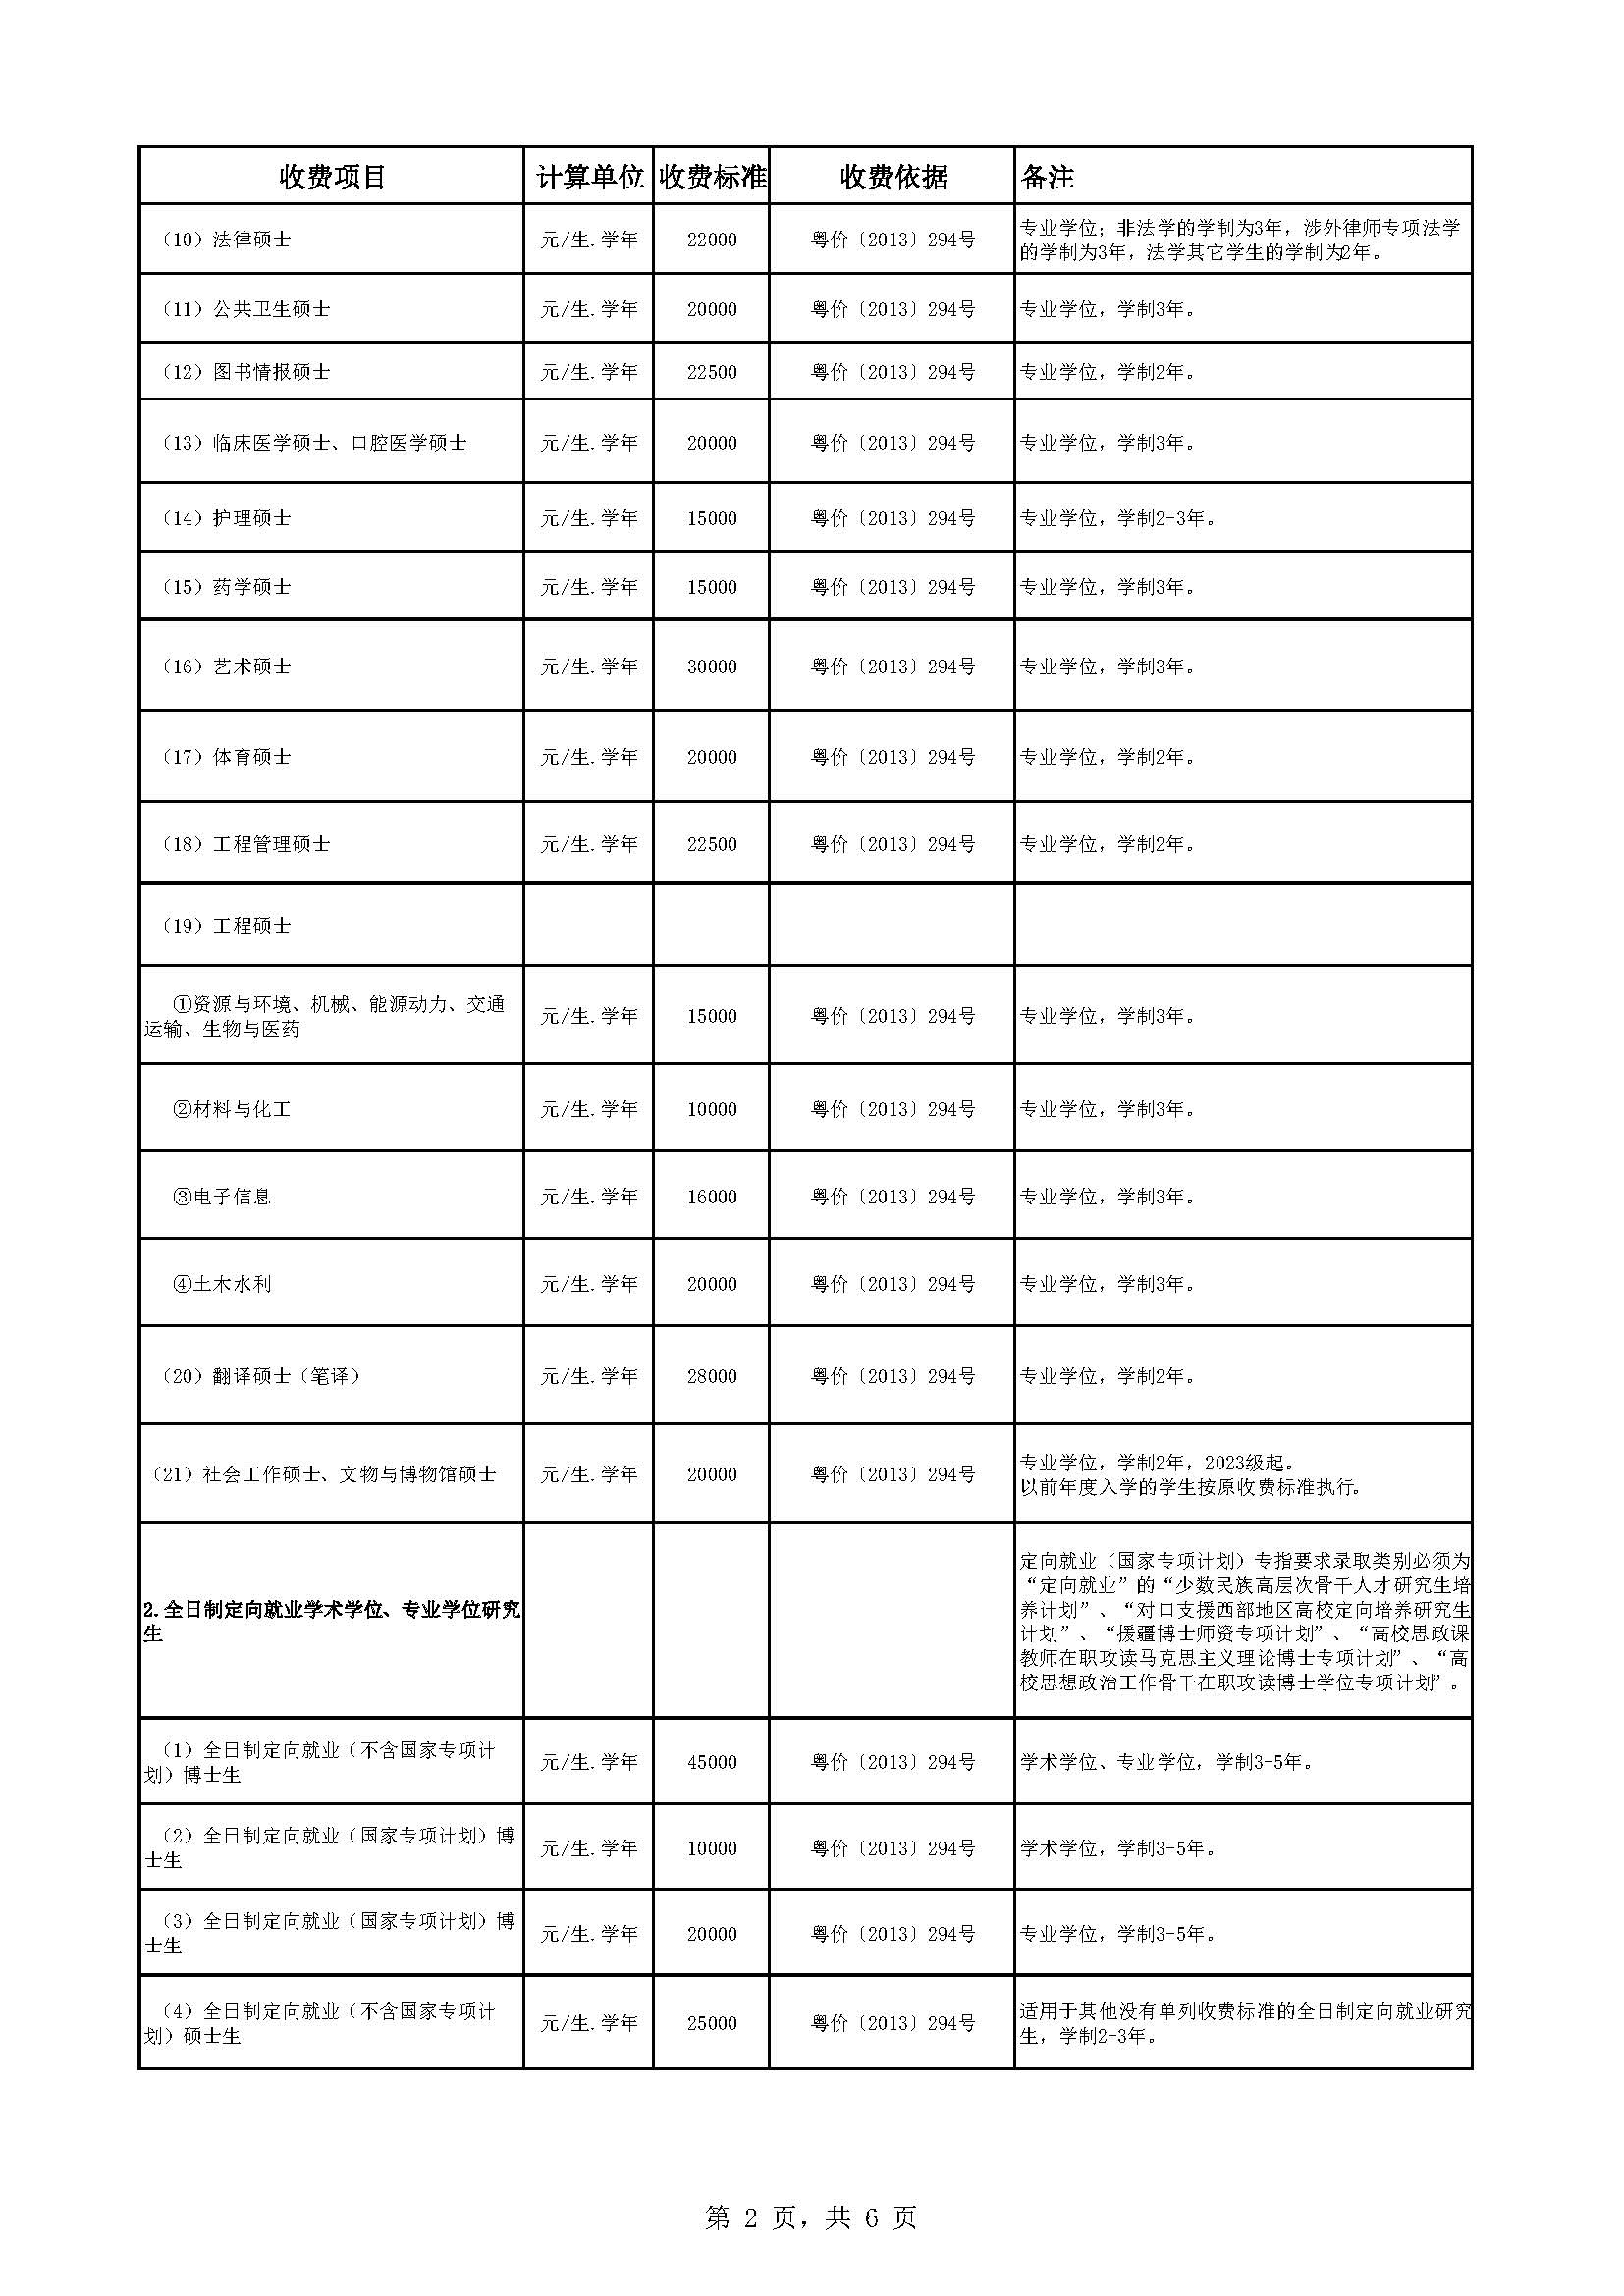 中山大学教育收费公示表（2022-2023年）_页面_2.jpg